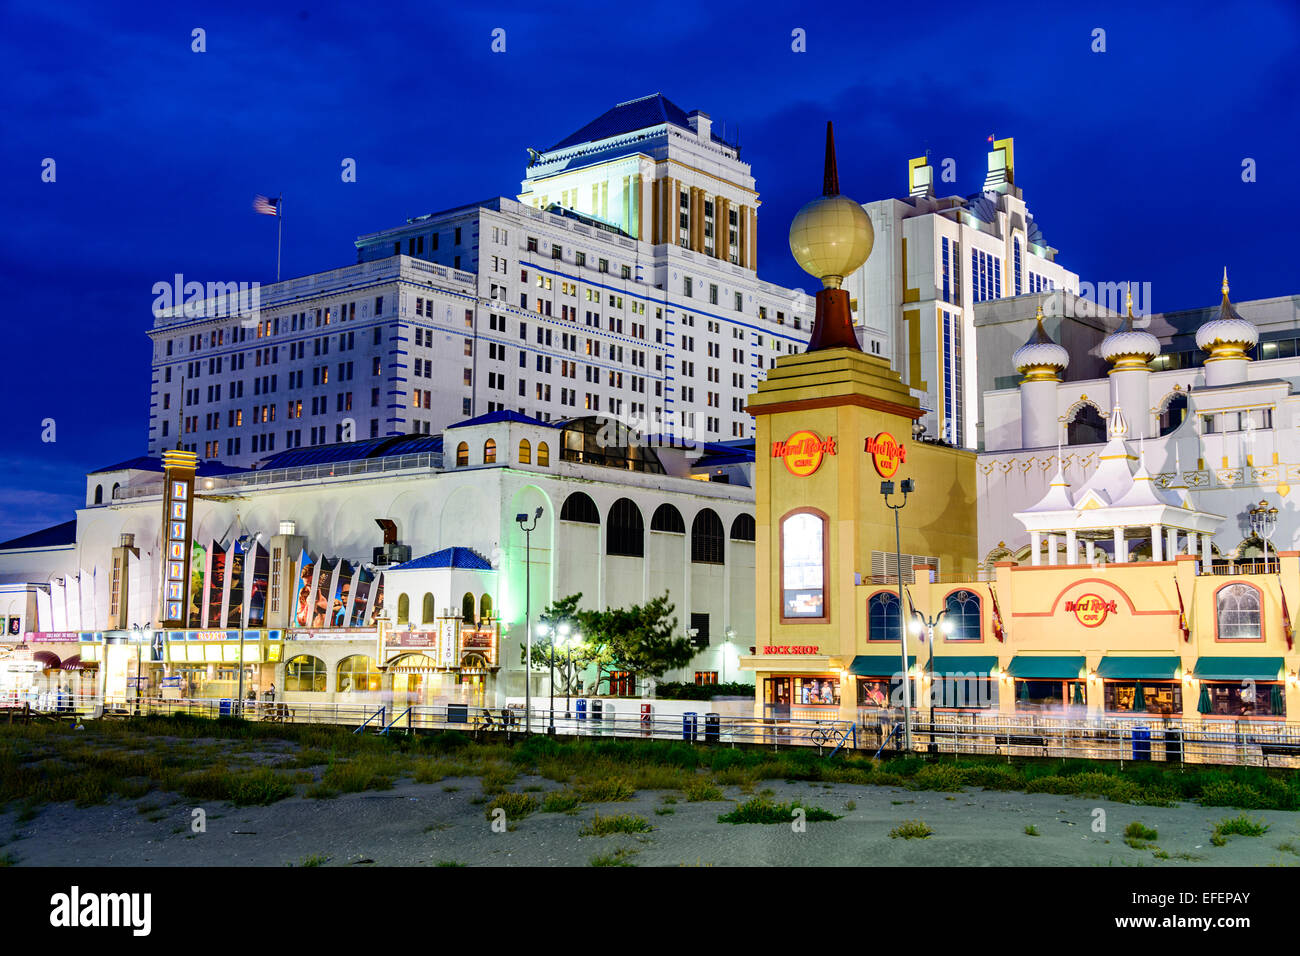 ATLANTIC CITY, NEW JERSEY - 8 septembre 2012 : la ligne de casinos Atlantic City boardwalk au crépuscule. Banque D'Images